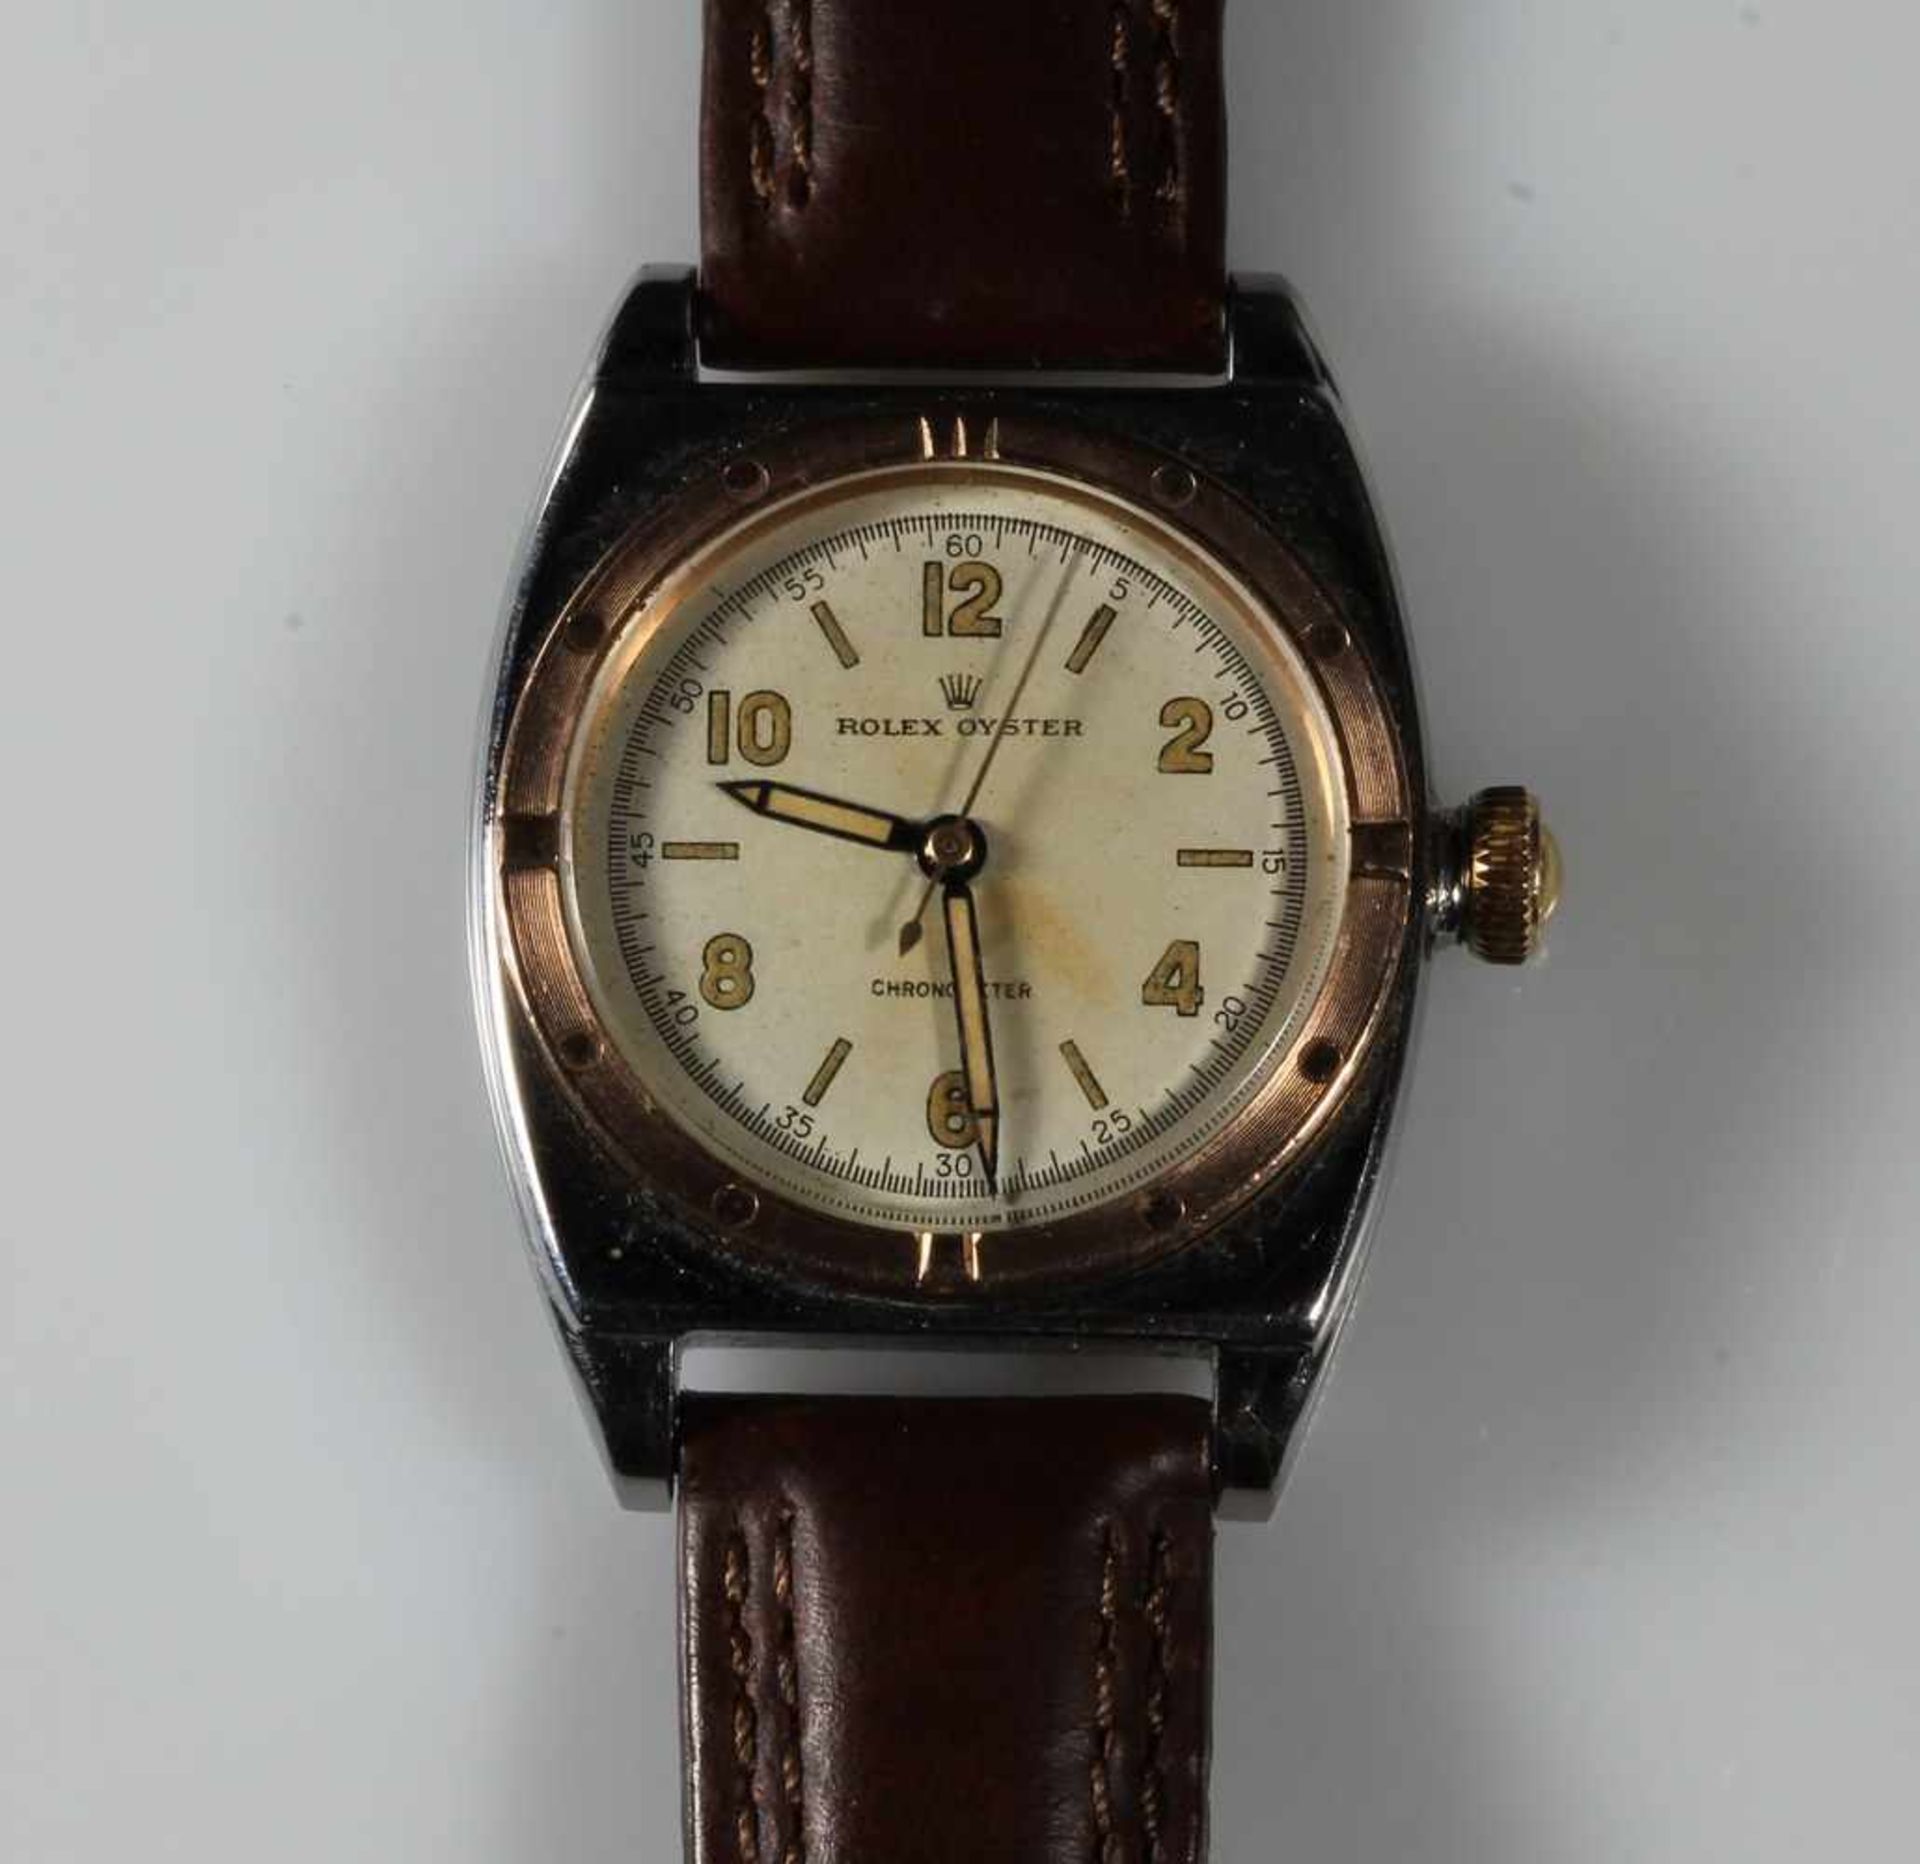 Herrenarmbanduhr, Rolex, Model Oyster, 1940er/50er Jahre, Referenz-Nr.3359, Gehäuse-Nr. 297736,